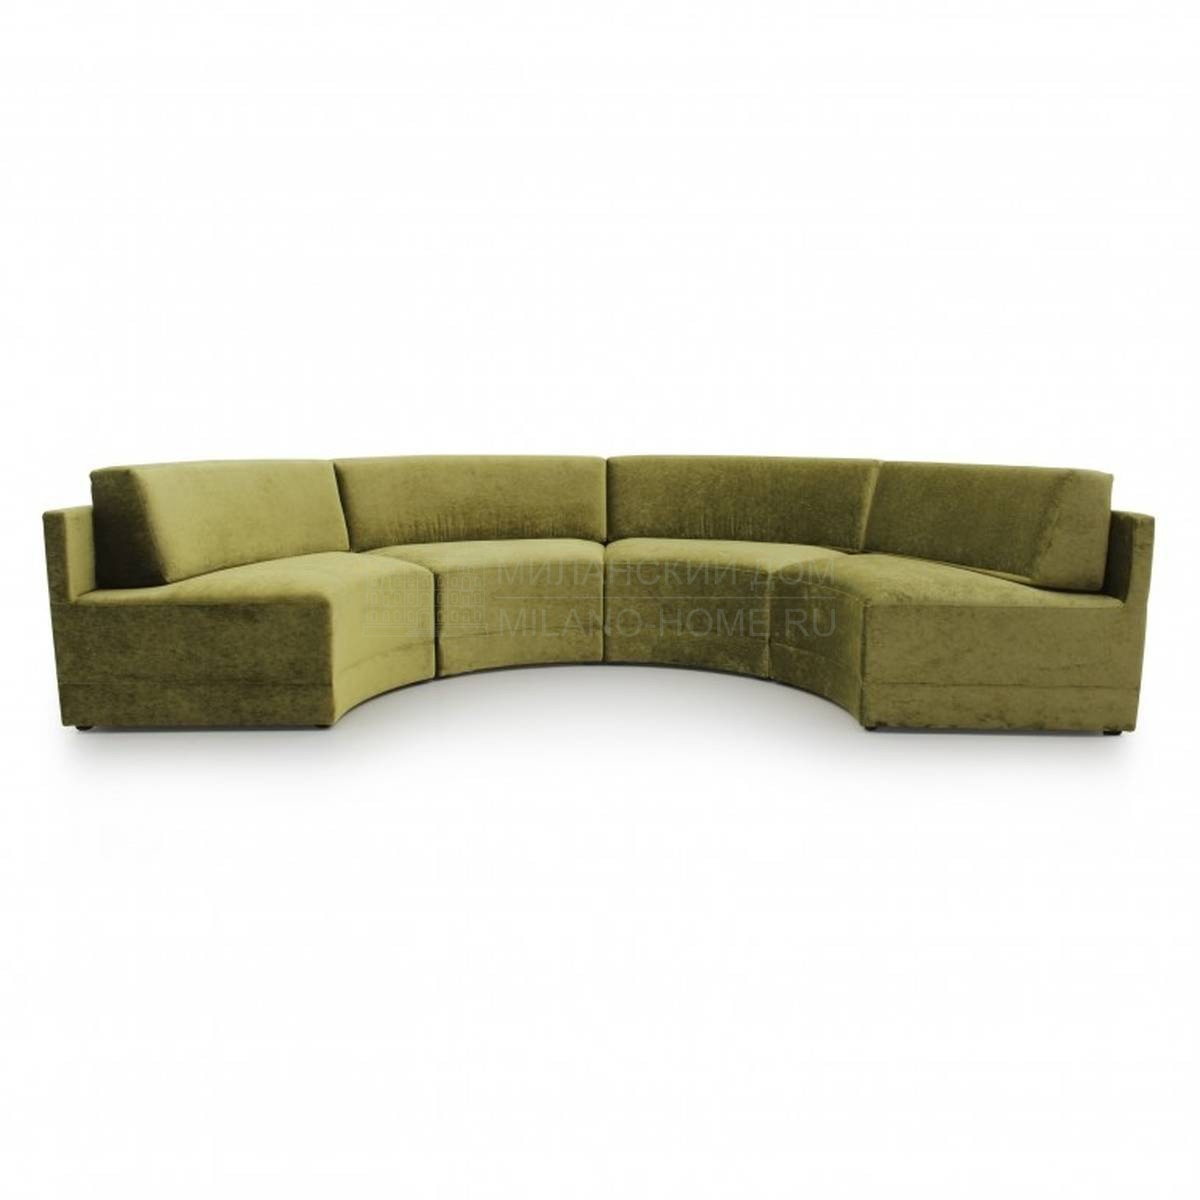 Модульный диван Custom026 из Италии фабрики SEVEN SEDIE